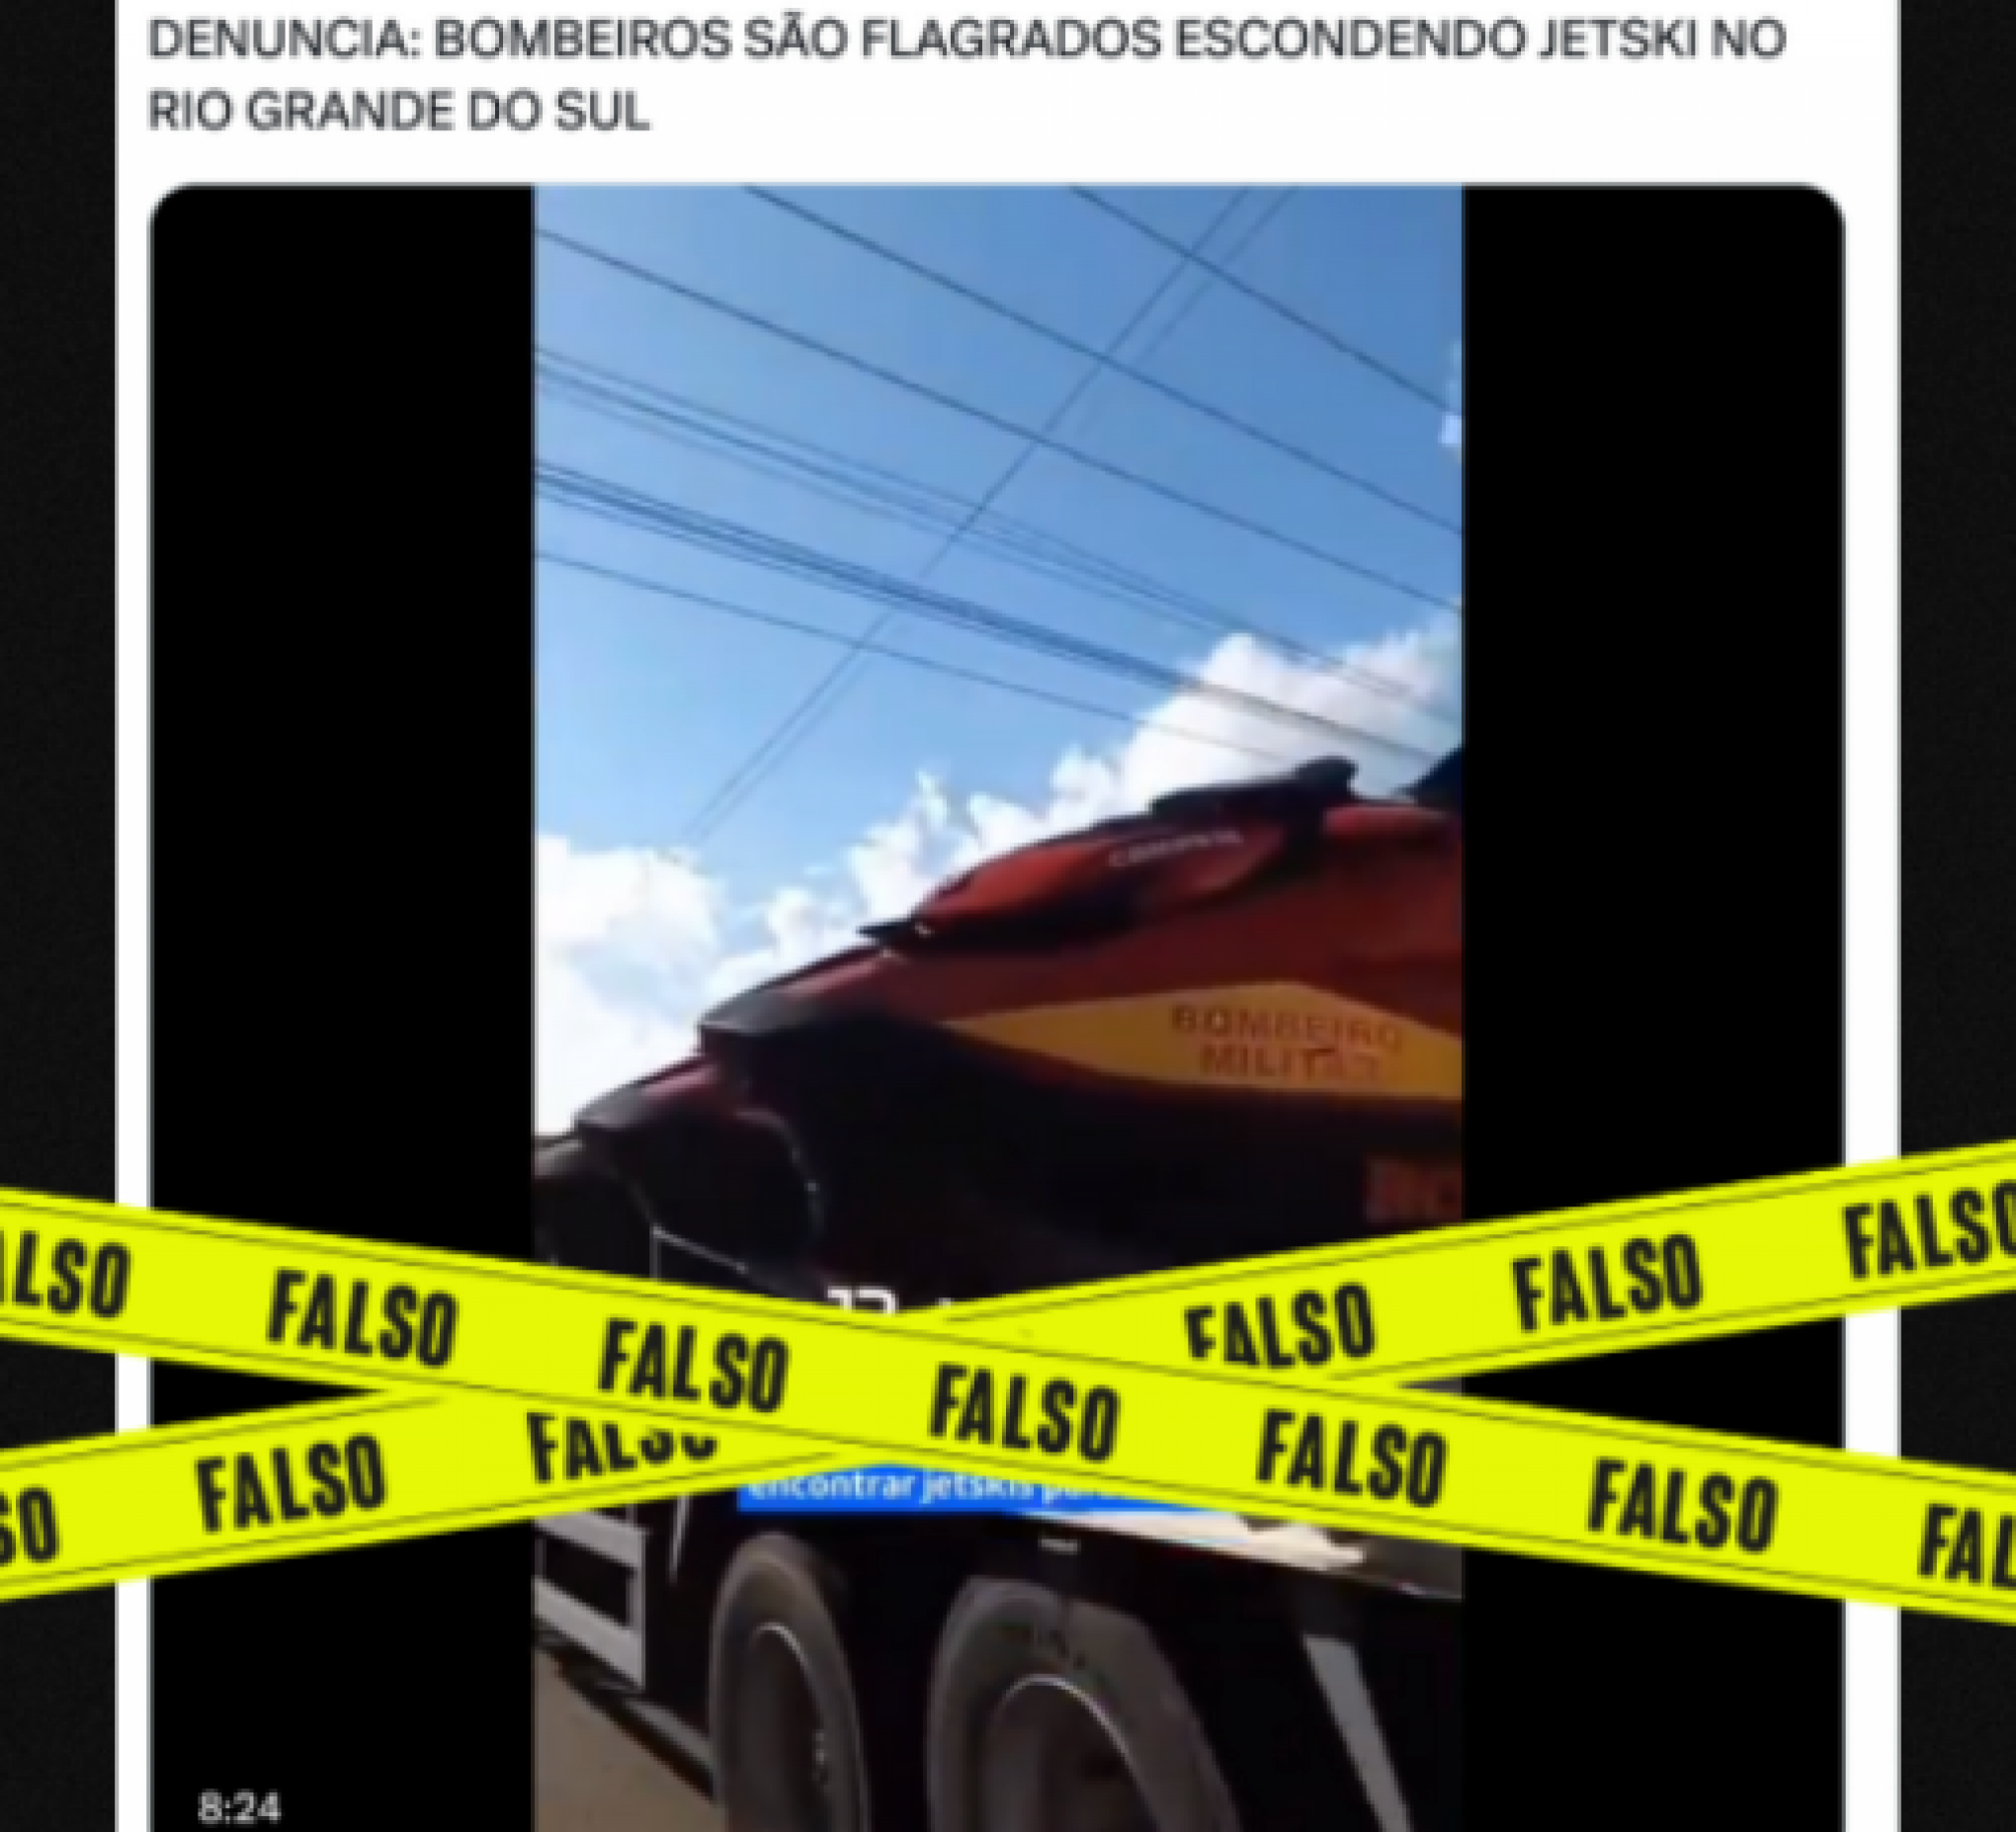 AGÊNCIA LUPA: É falso que bombeiros estavam escondendo jet skis em Nova Santa Rita